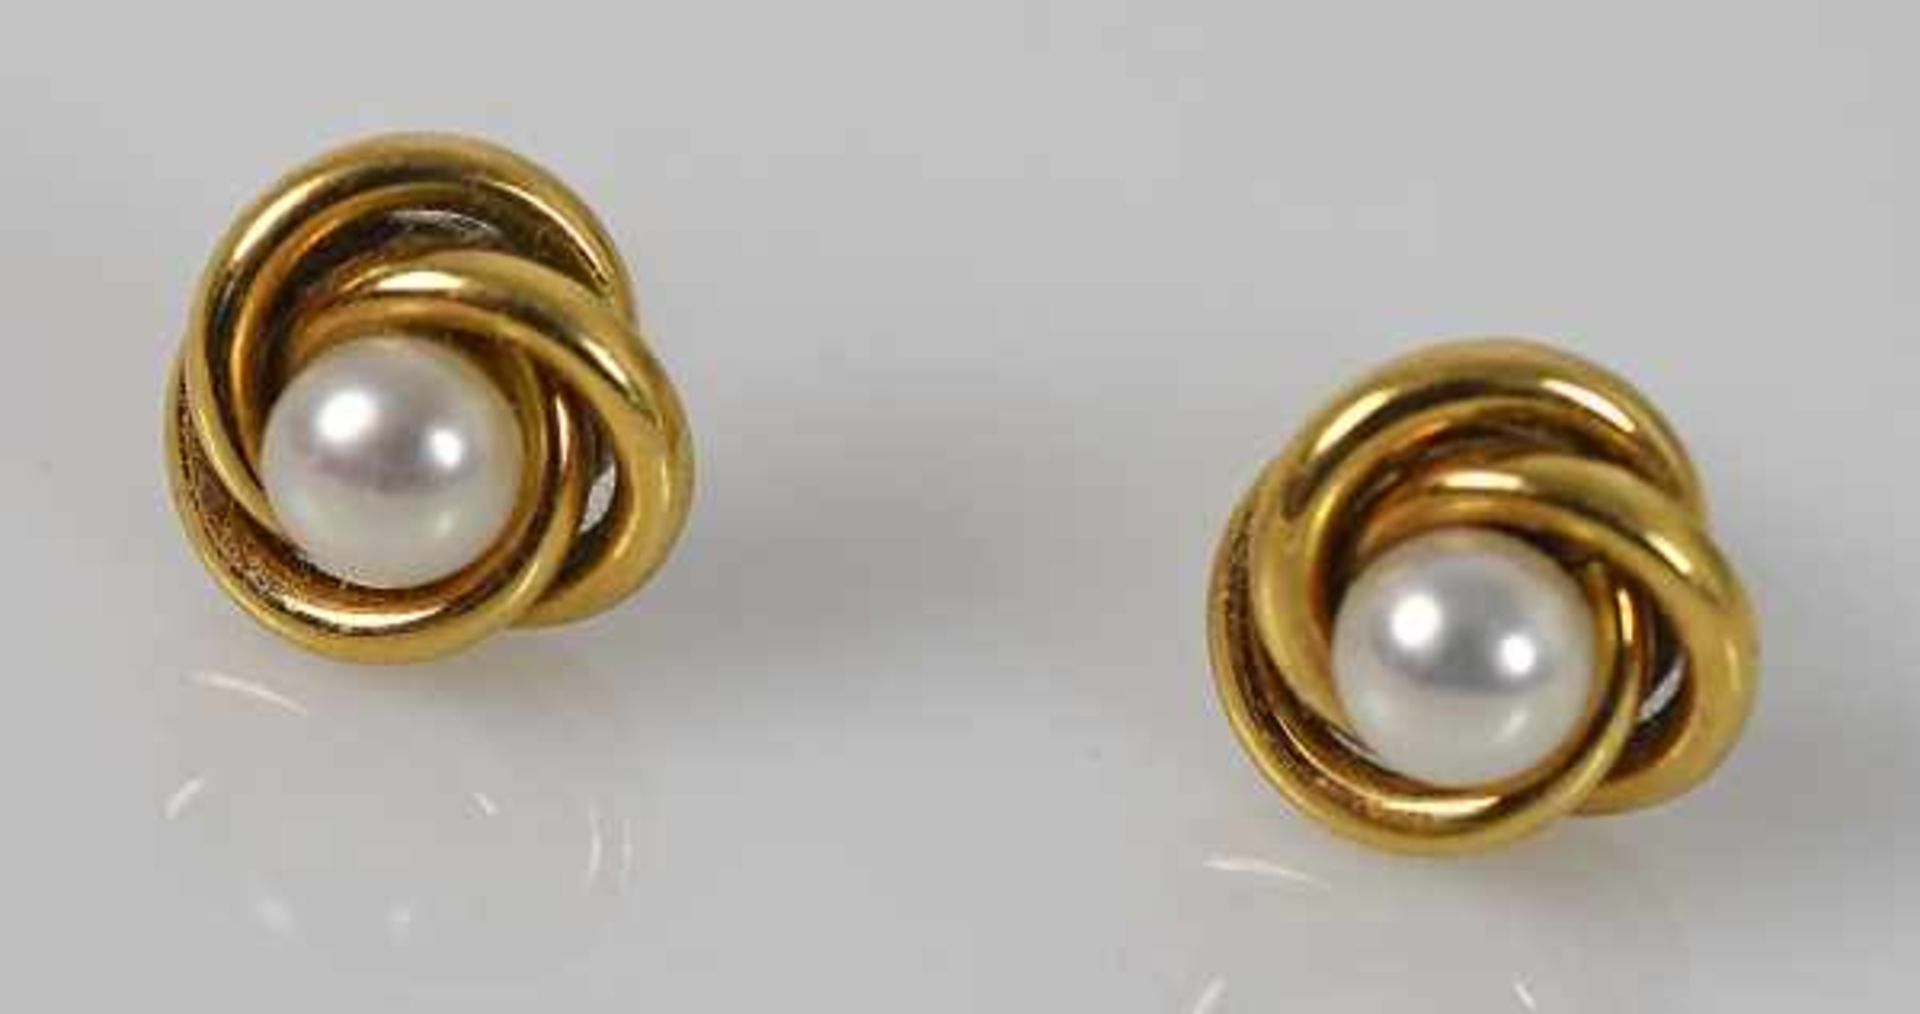 FEINE PERLENKETTE kleine Perlen mit ovalem Goldverschluß 14ct, L 42cm und Paar Ohrstecker mit - Image 2 of 3